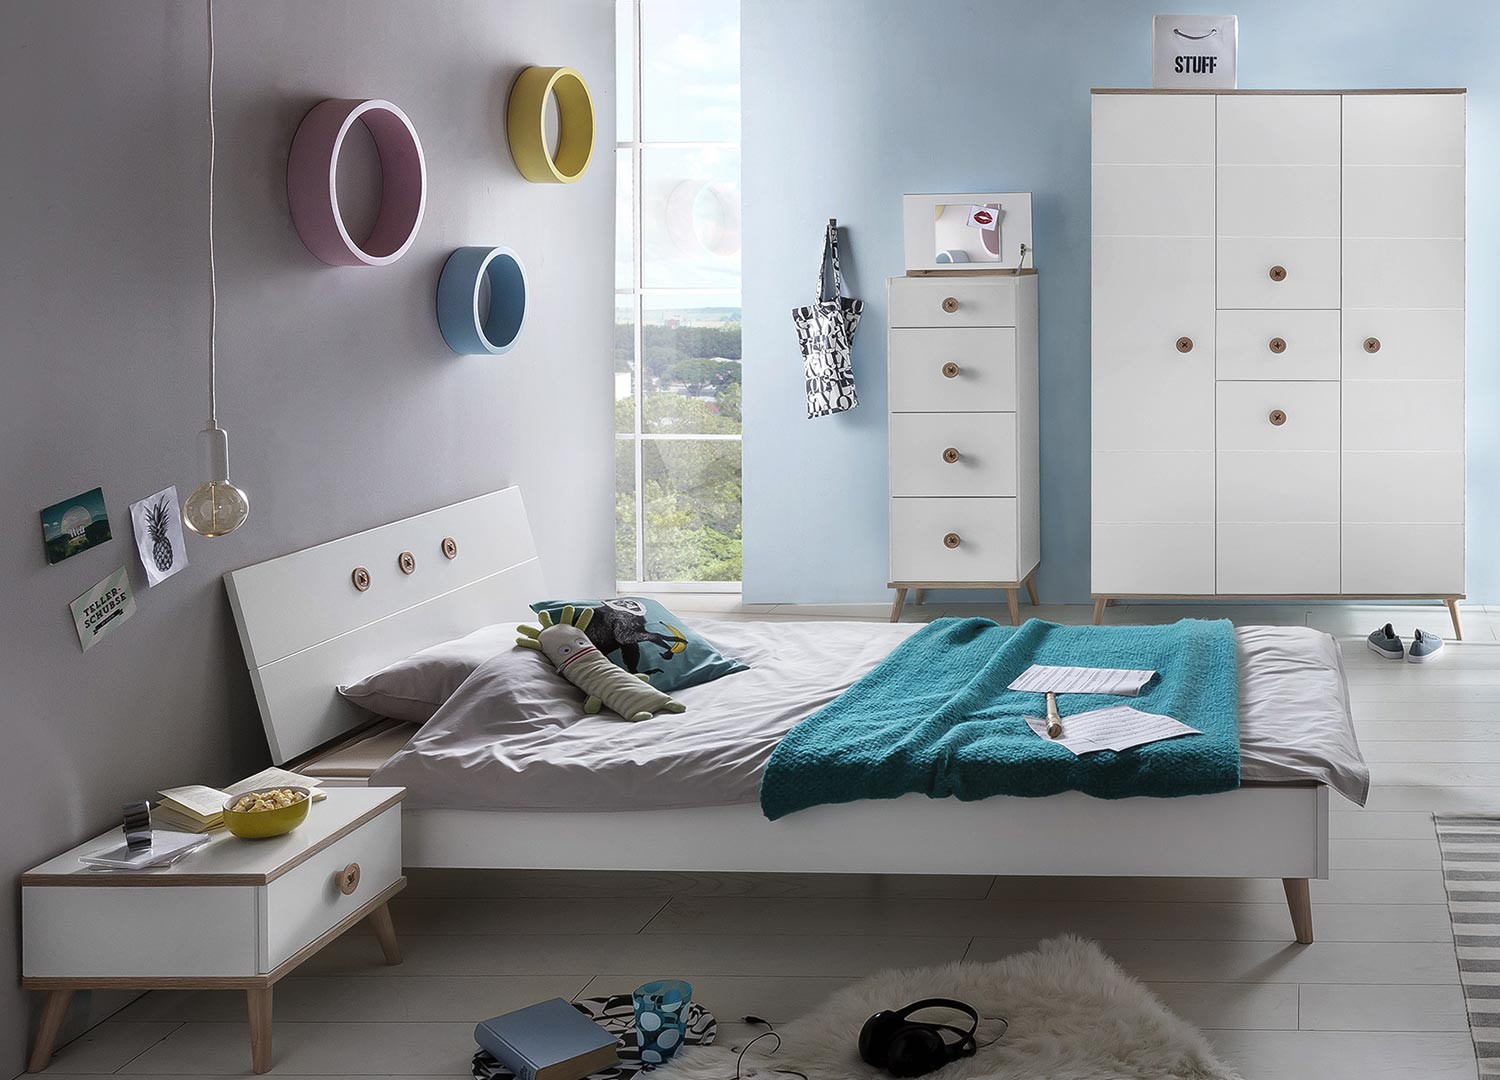 Chambre à coucher enfant/ado (lit 140x200 cm + 2 chevets + armoire